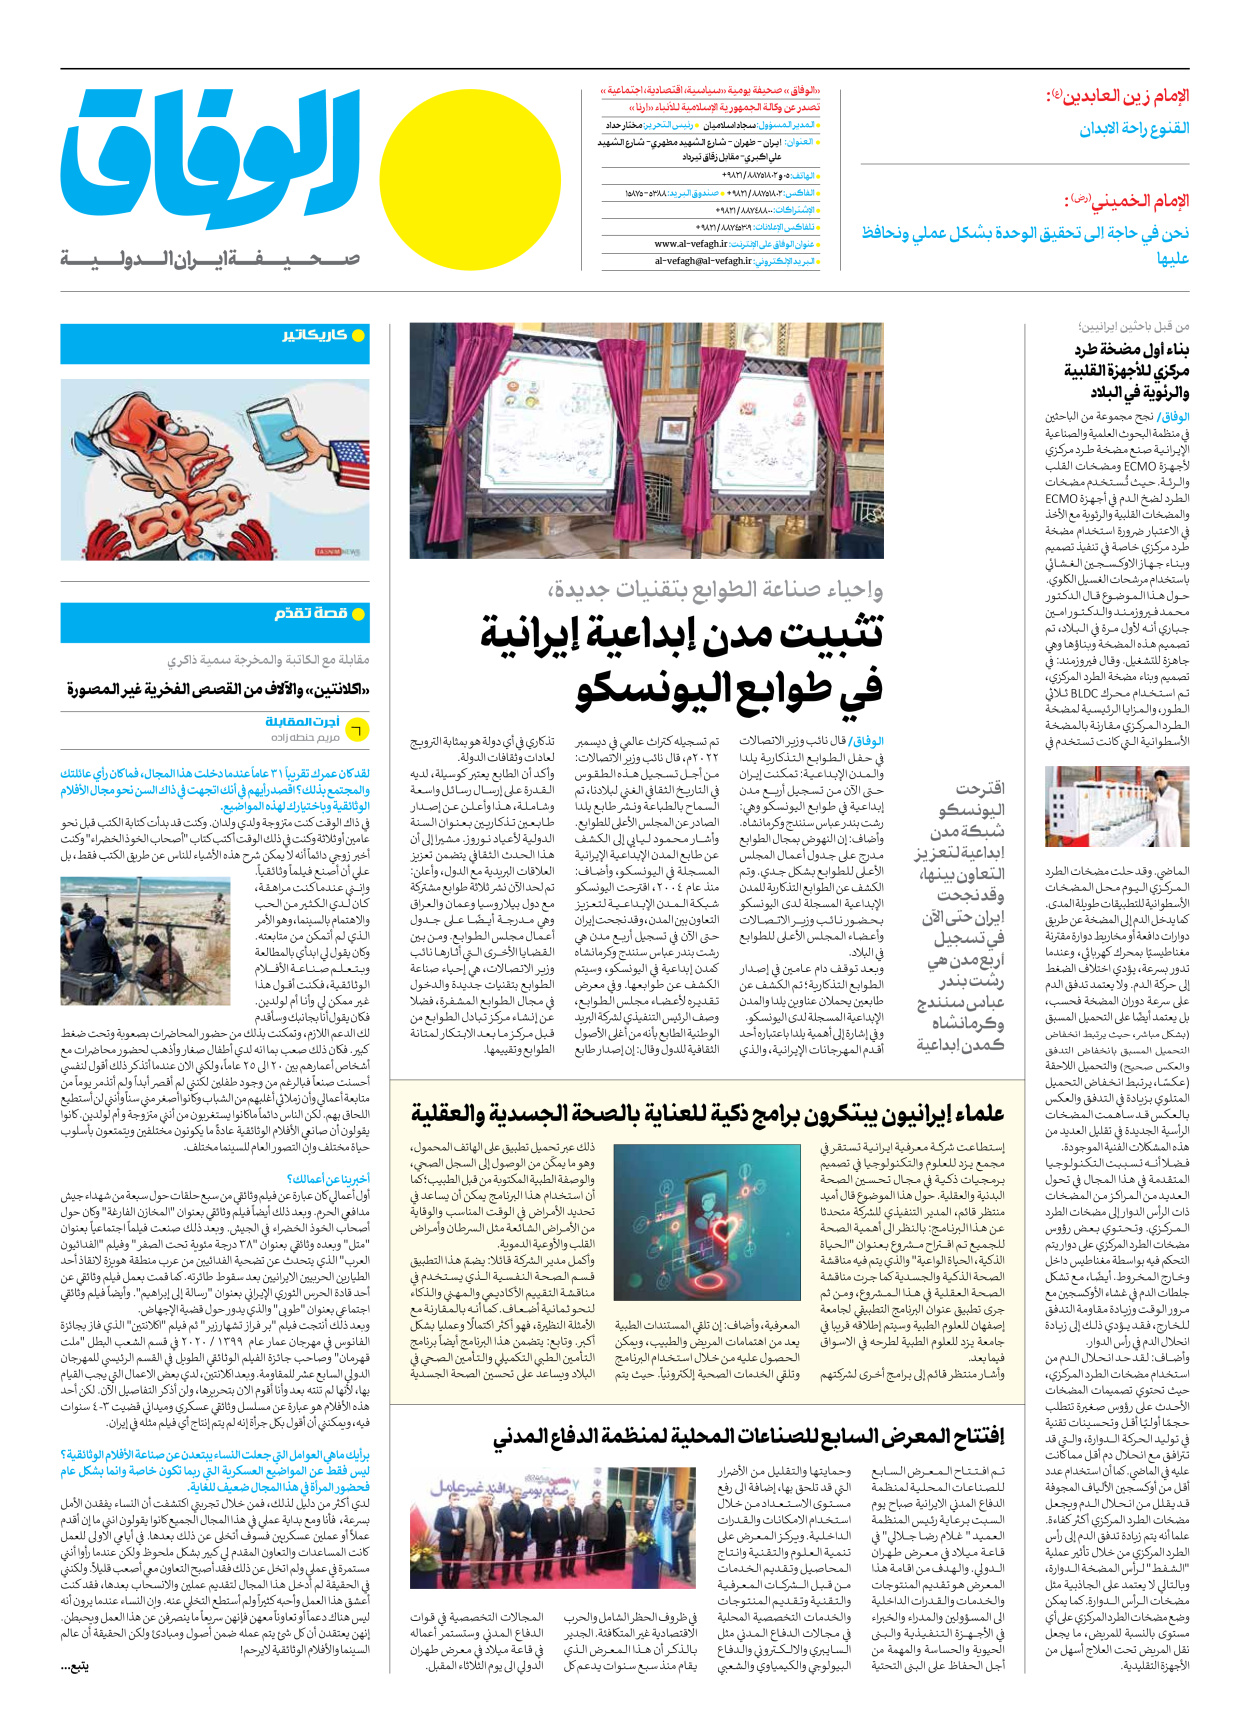 صحیفة ایران الدولیة الوفاق - العدد سبعة آلاف وأربعمائة وتسعة - ٢٥ ديسمبر ٢٠٢٣ - الصفحة ۸